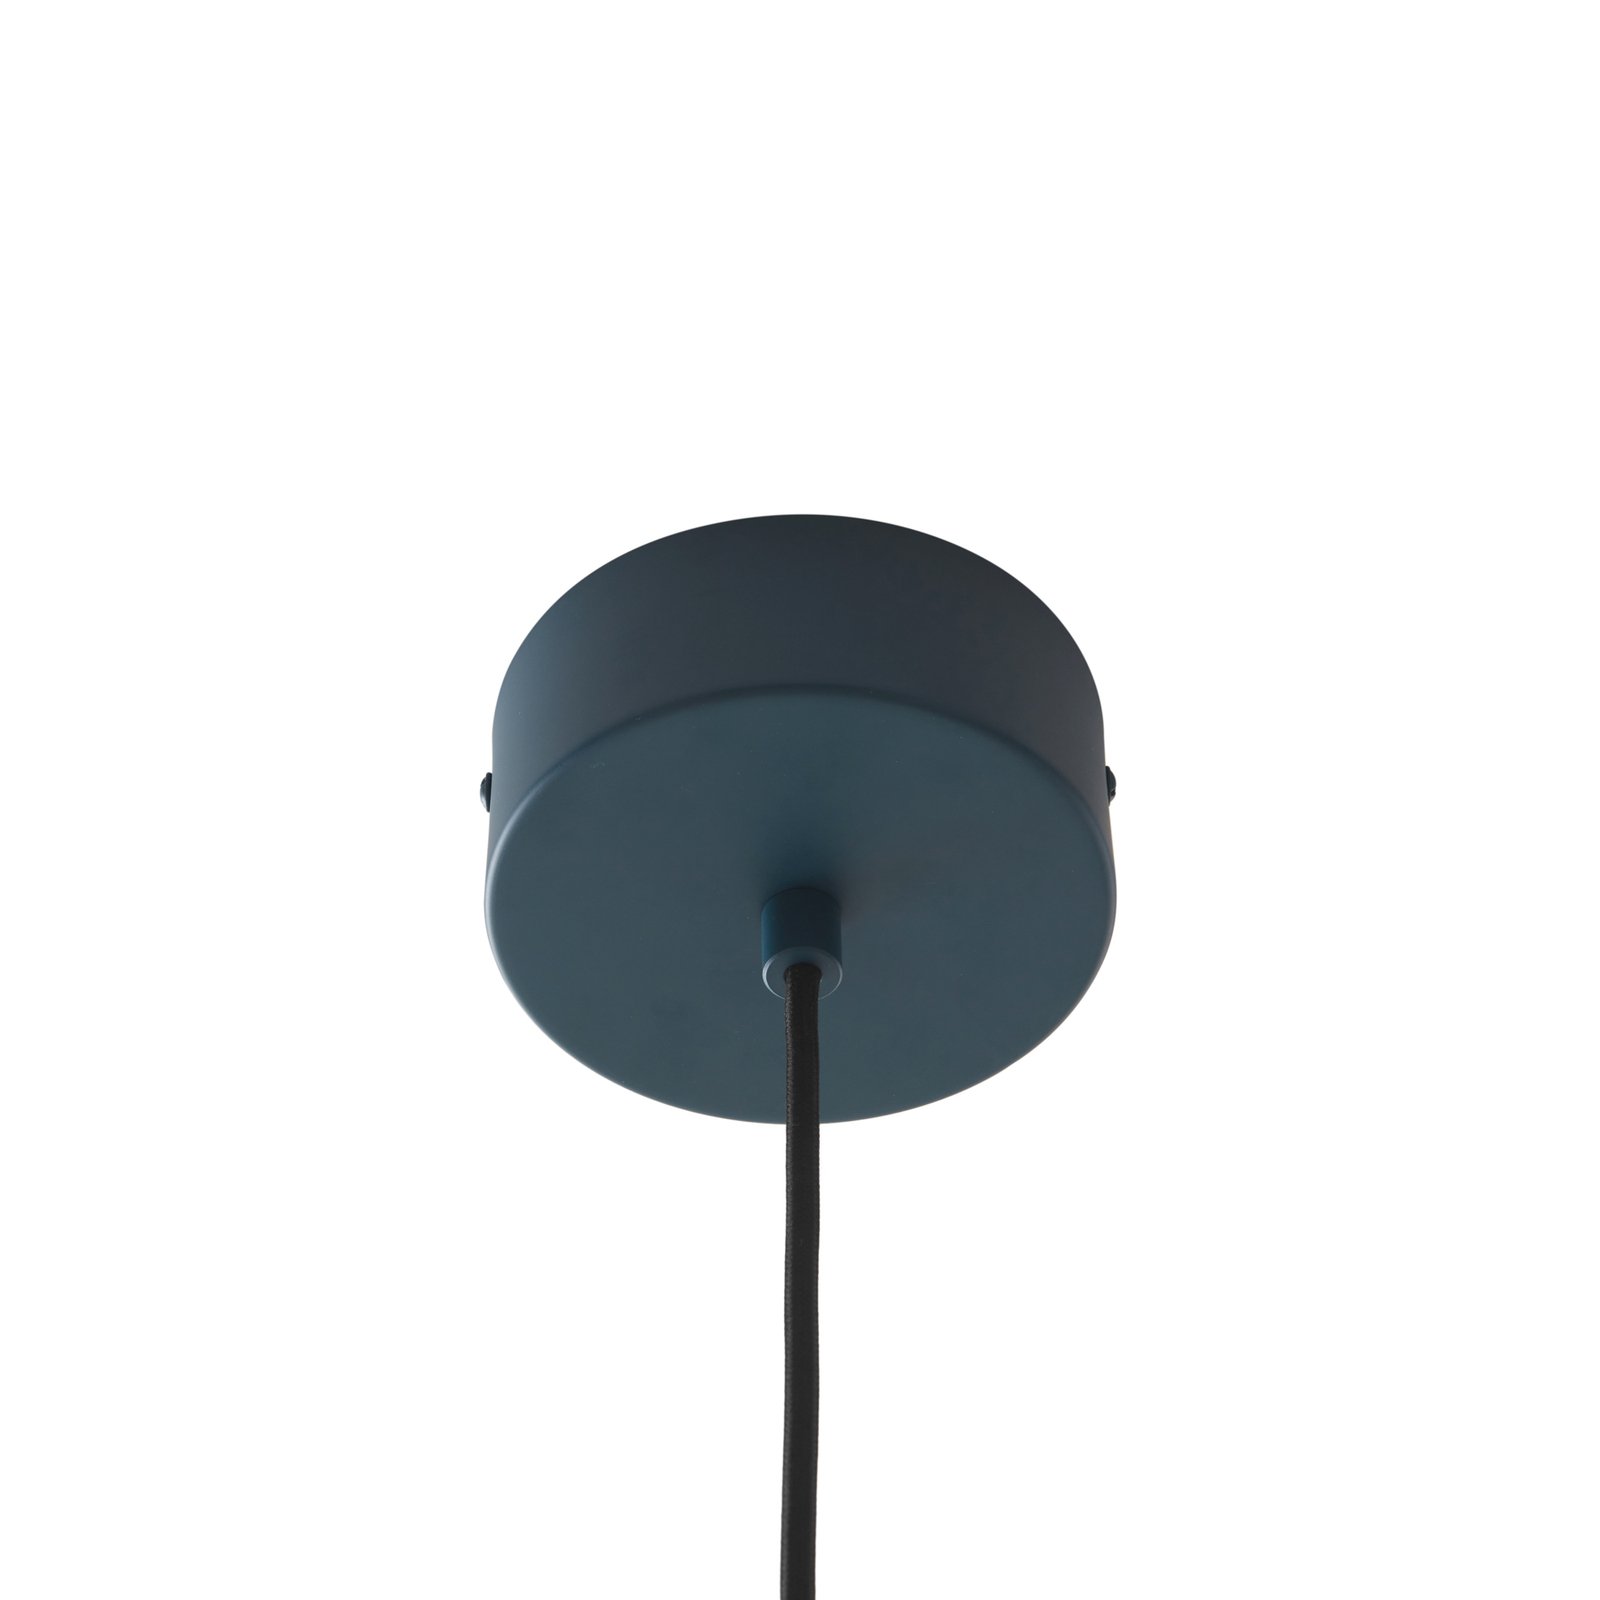 Závesné svietidlo Lucande LED Faelinor, modrá farba, hliník, Ø 35 cm